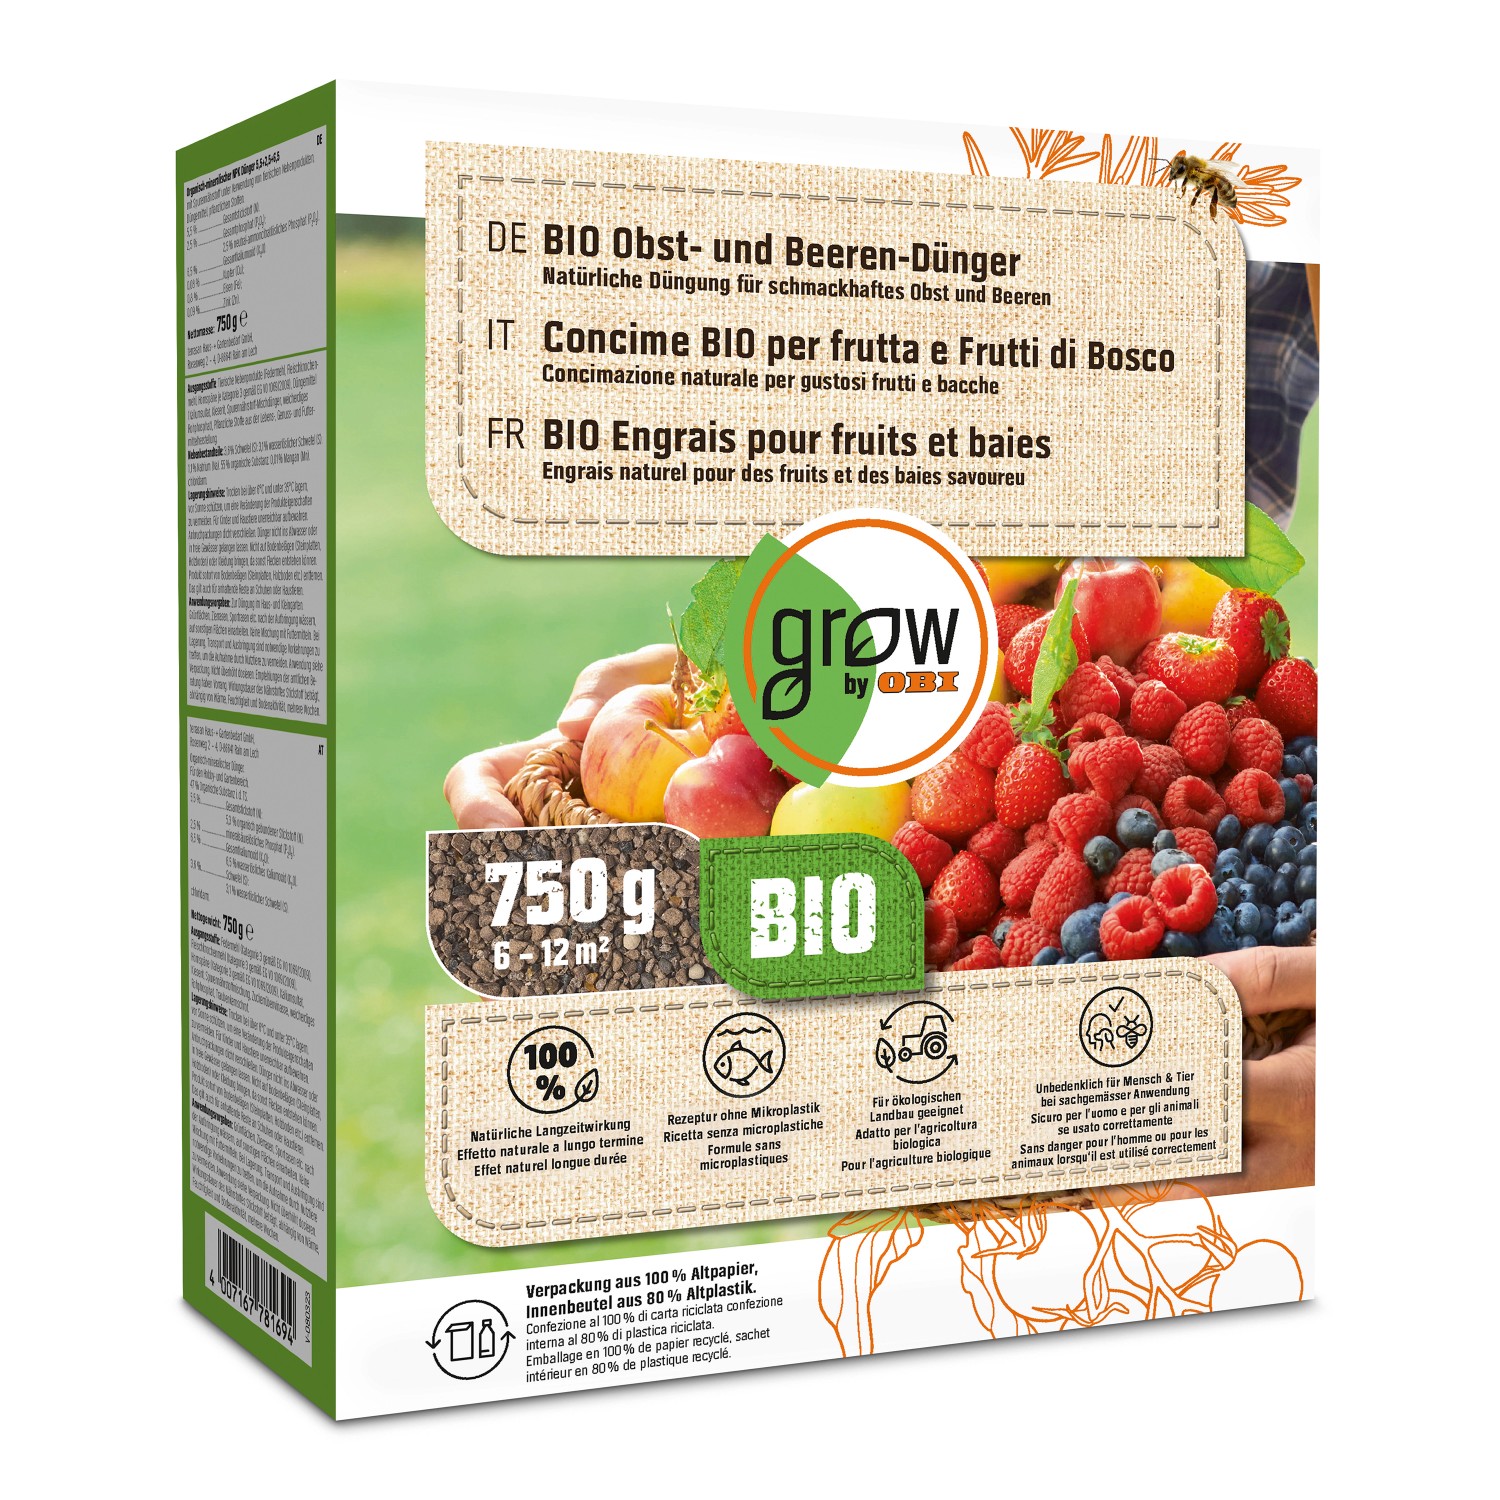 OBI Bio Obst- und Beeren-Dünger 750 g von GROW by OBI